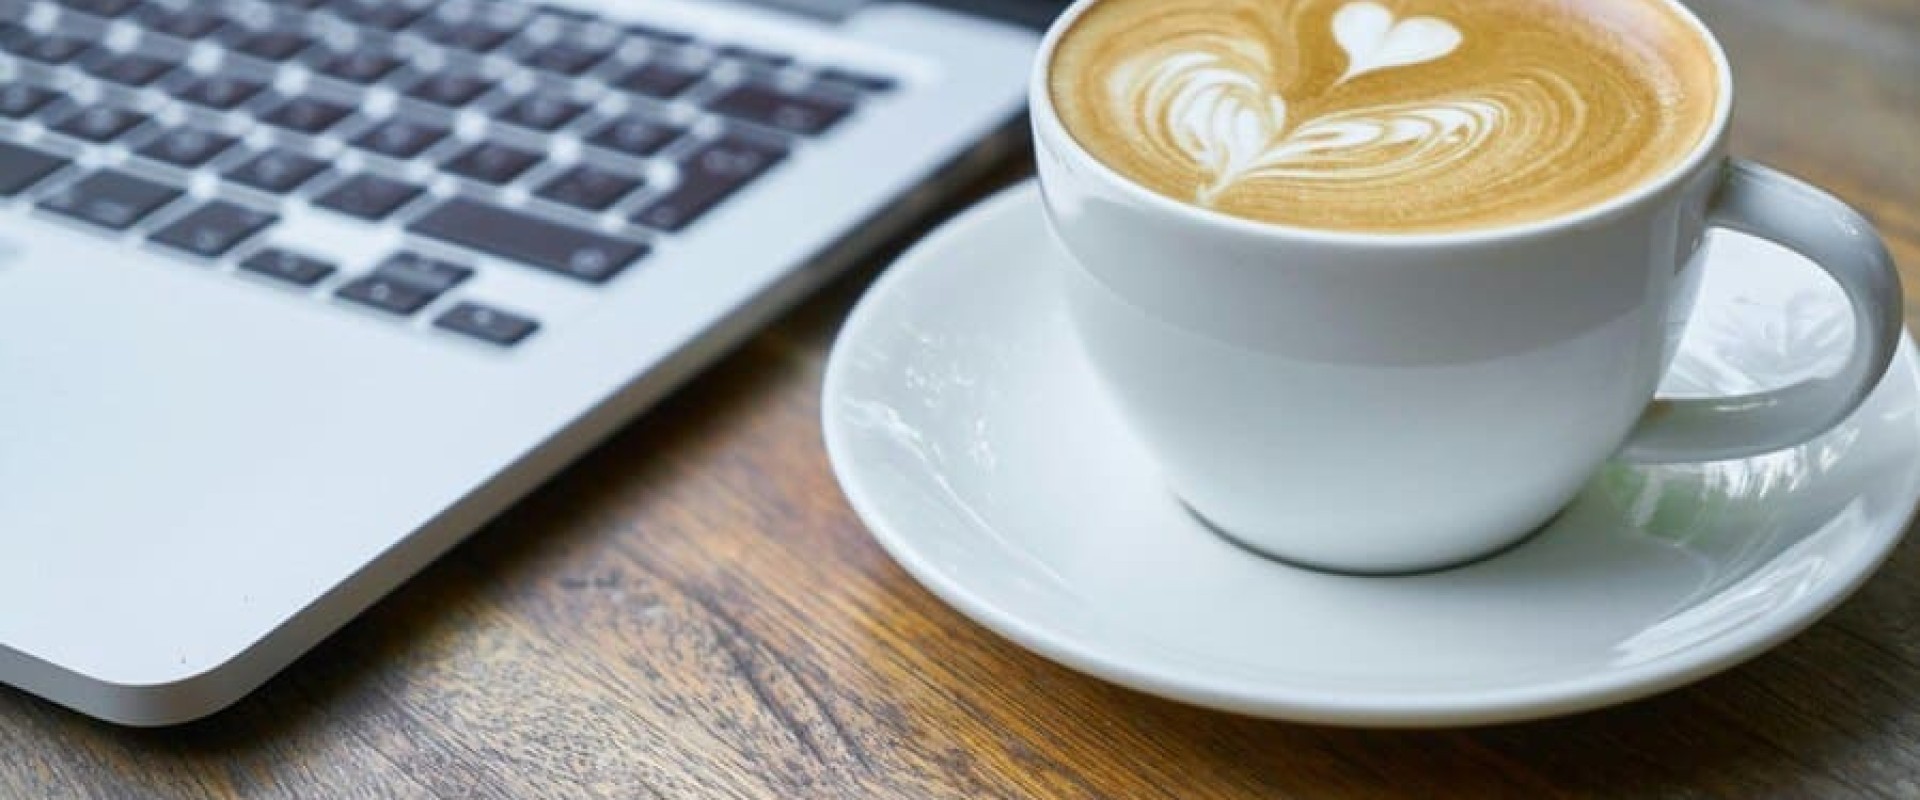 Сеть Stars Coffee оказалась эффективнее своего предшественника Starbucks. Новости за 26 марта